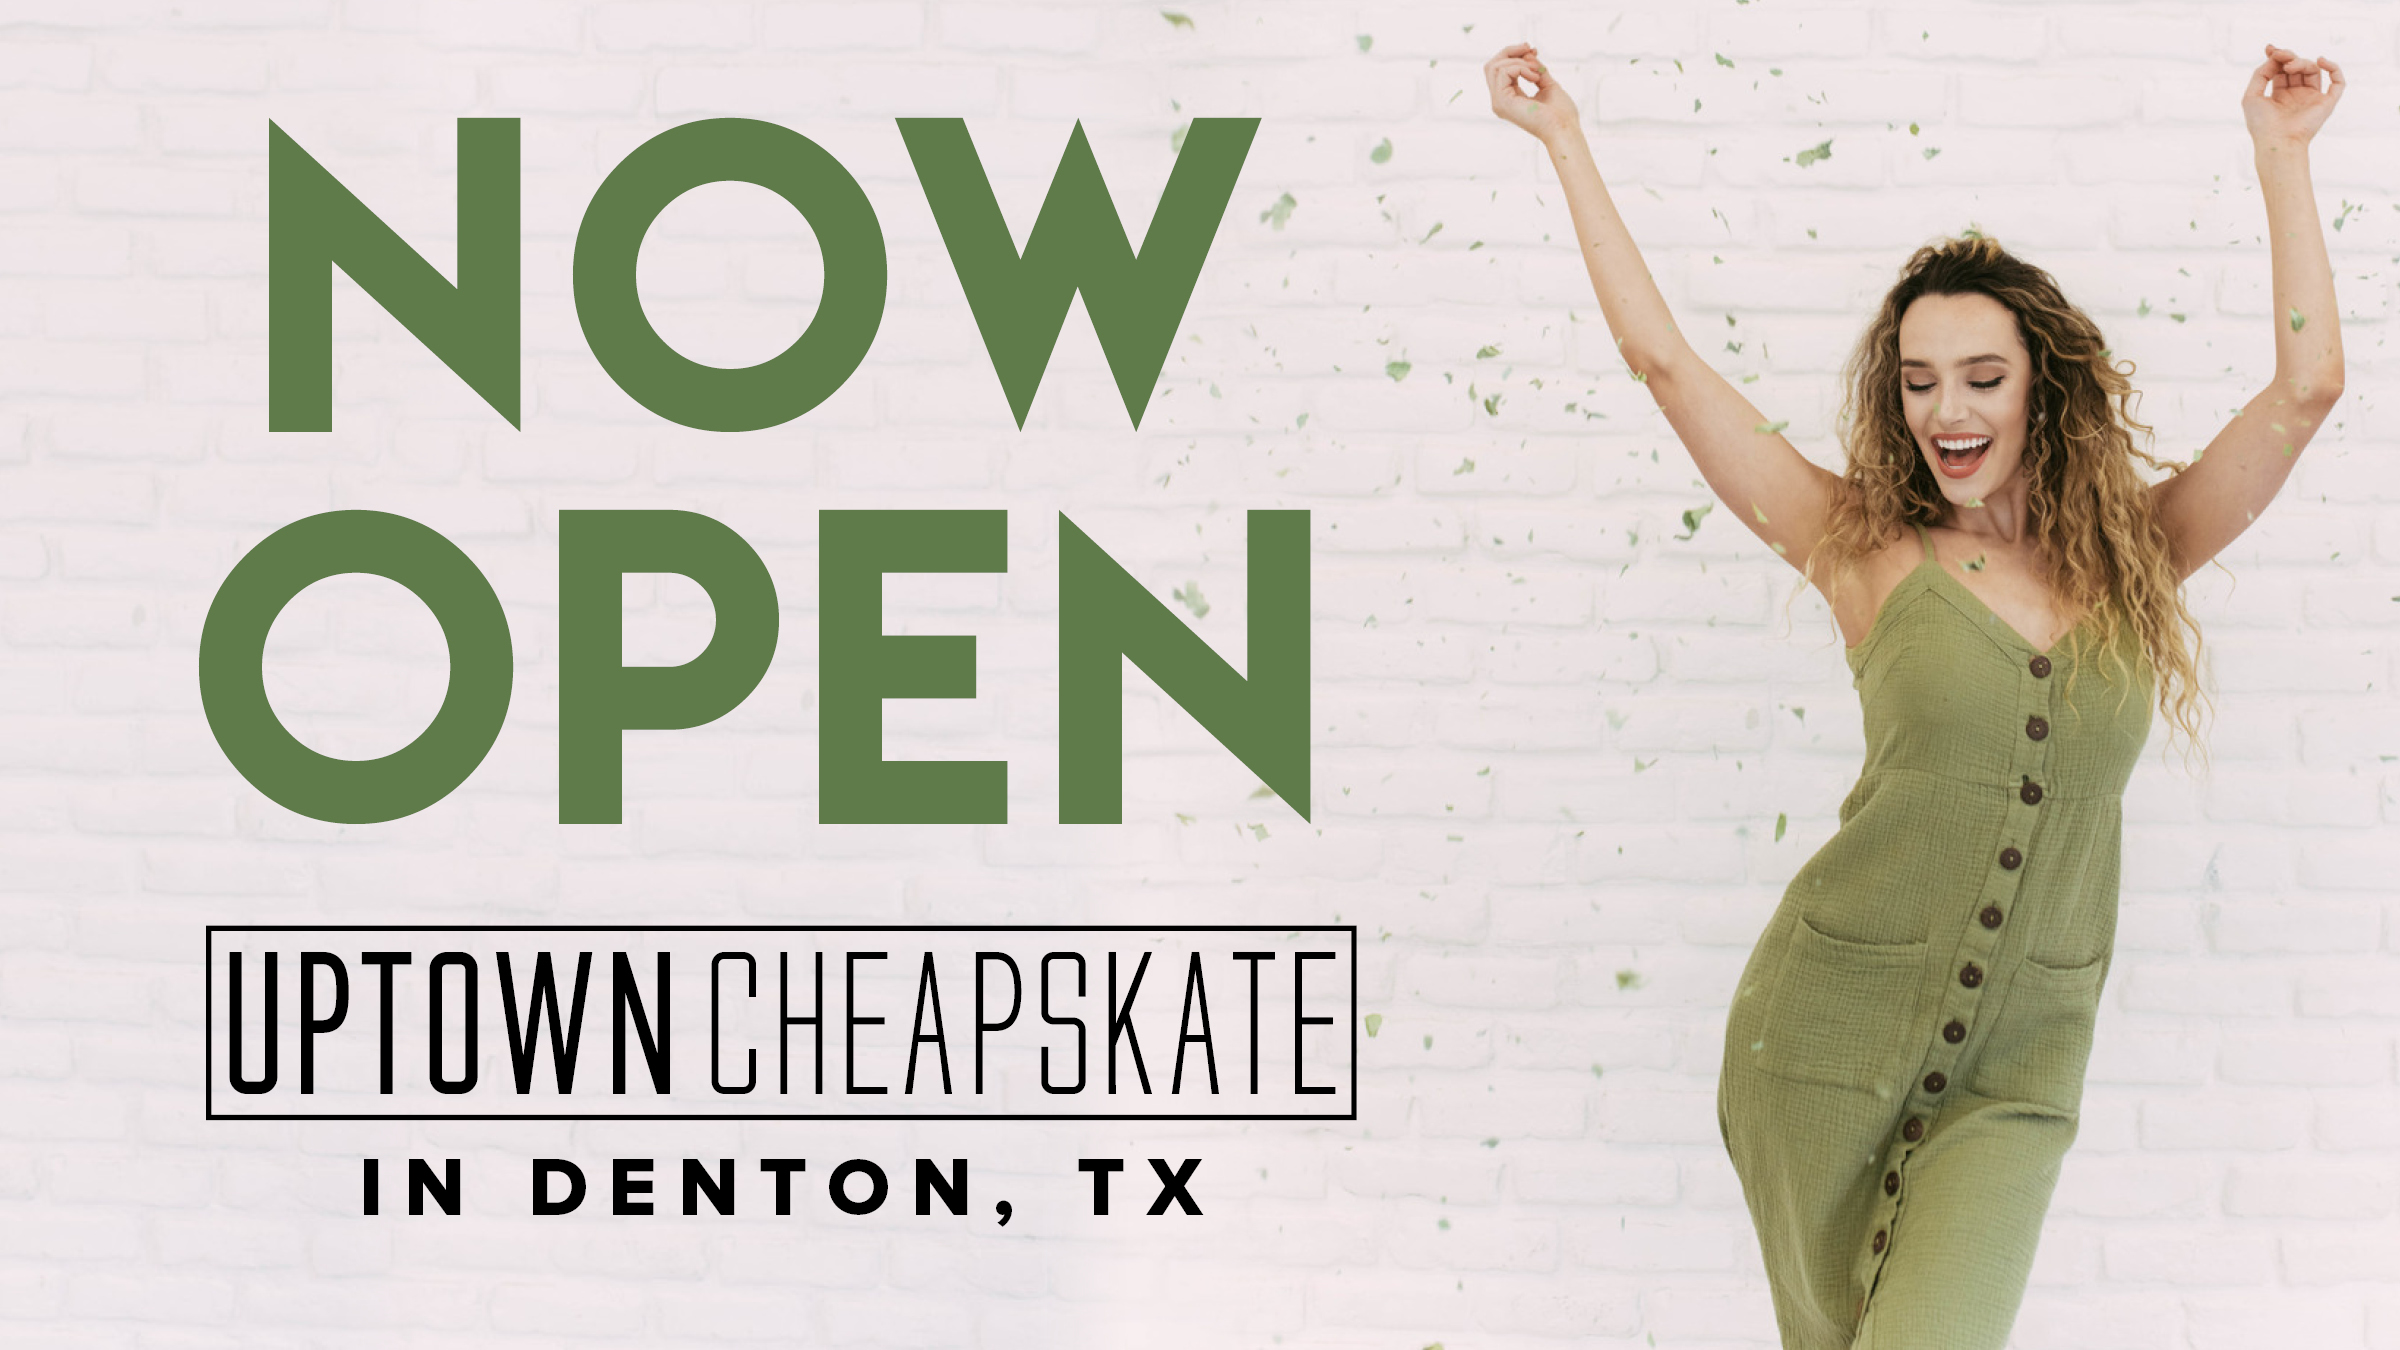 Uptown Cheapskate Denton now open